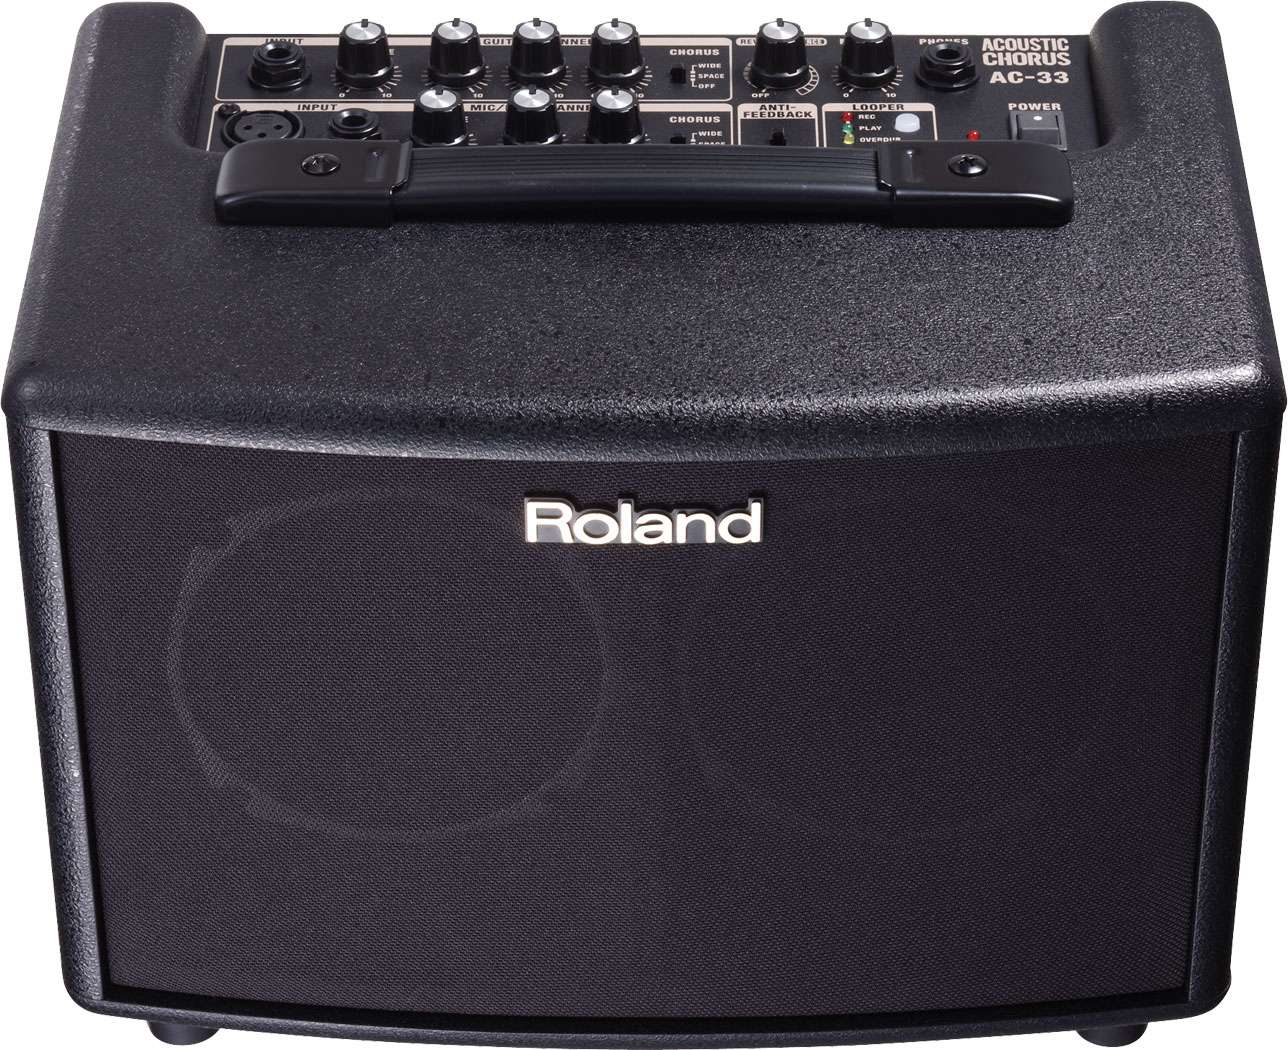 Roland Ac-33 Black - Combo Ampli Acoustique - Variation 4